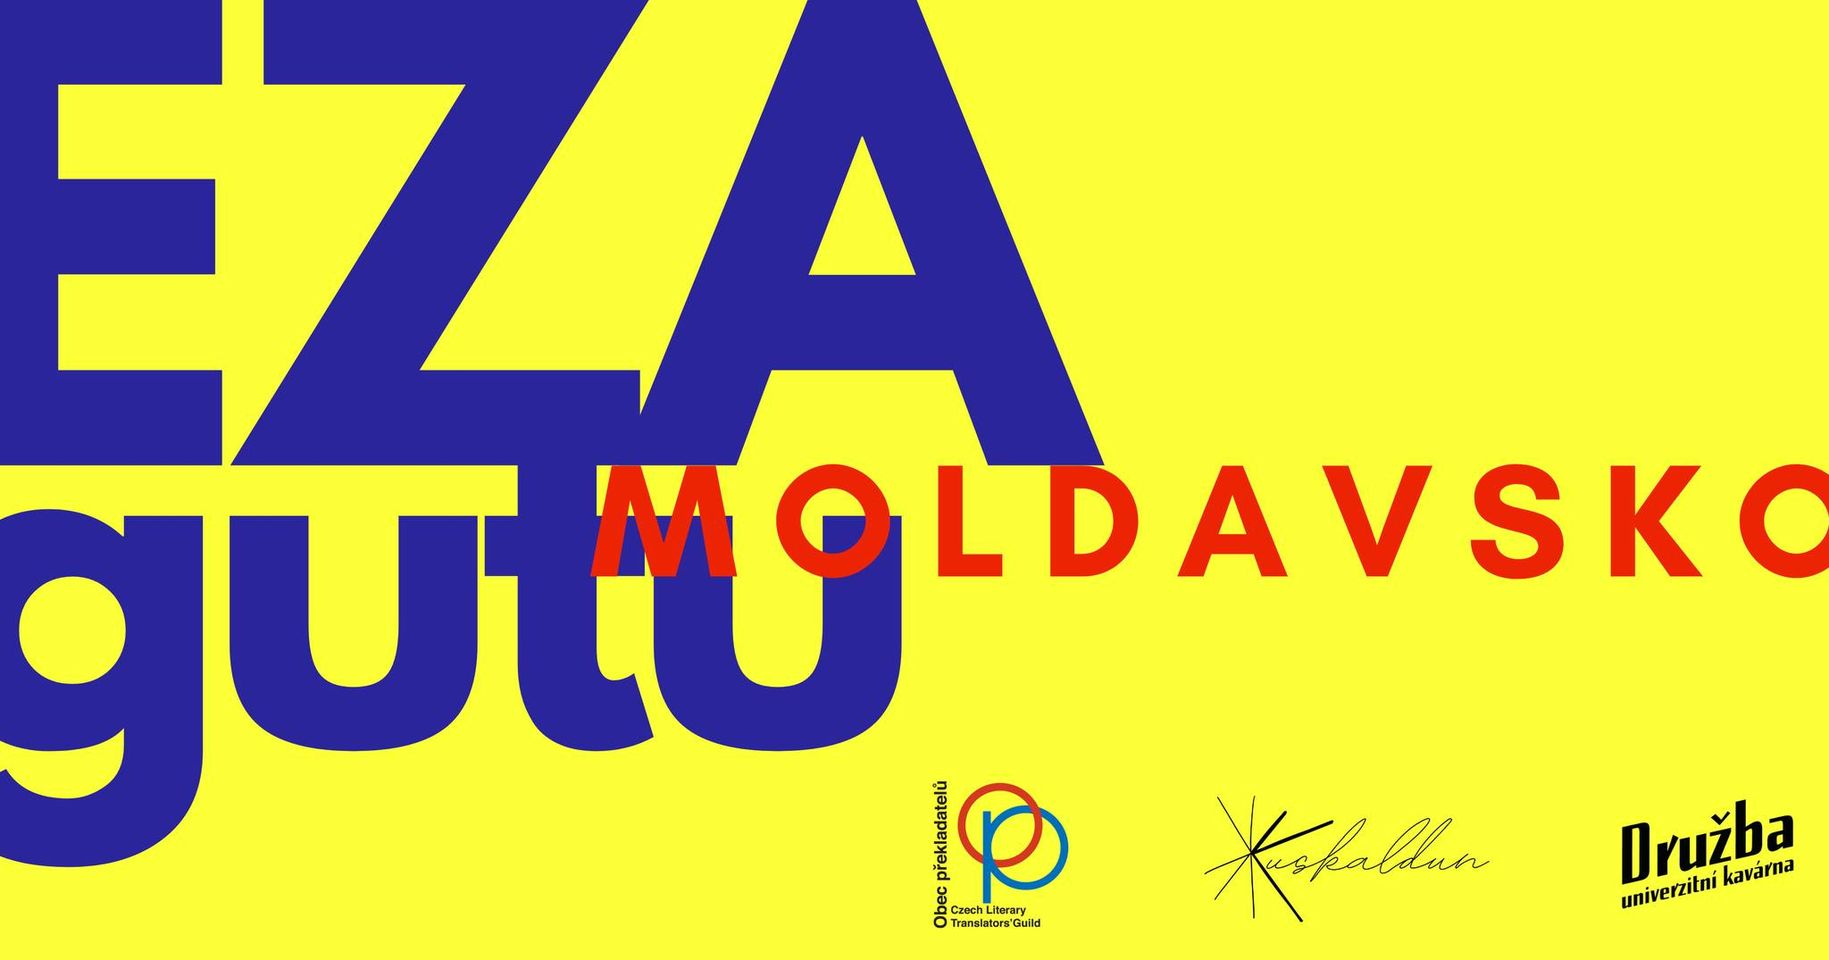 Ezagutu Moldavsko/Poznat Moldavsko